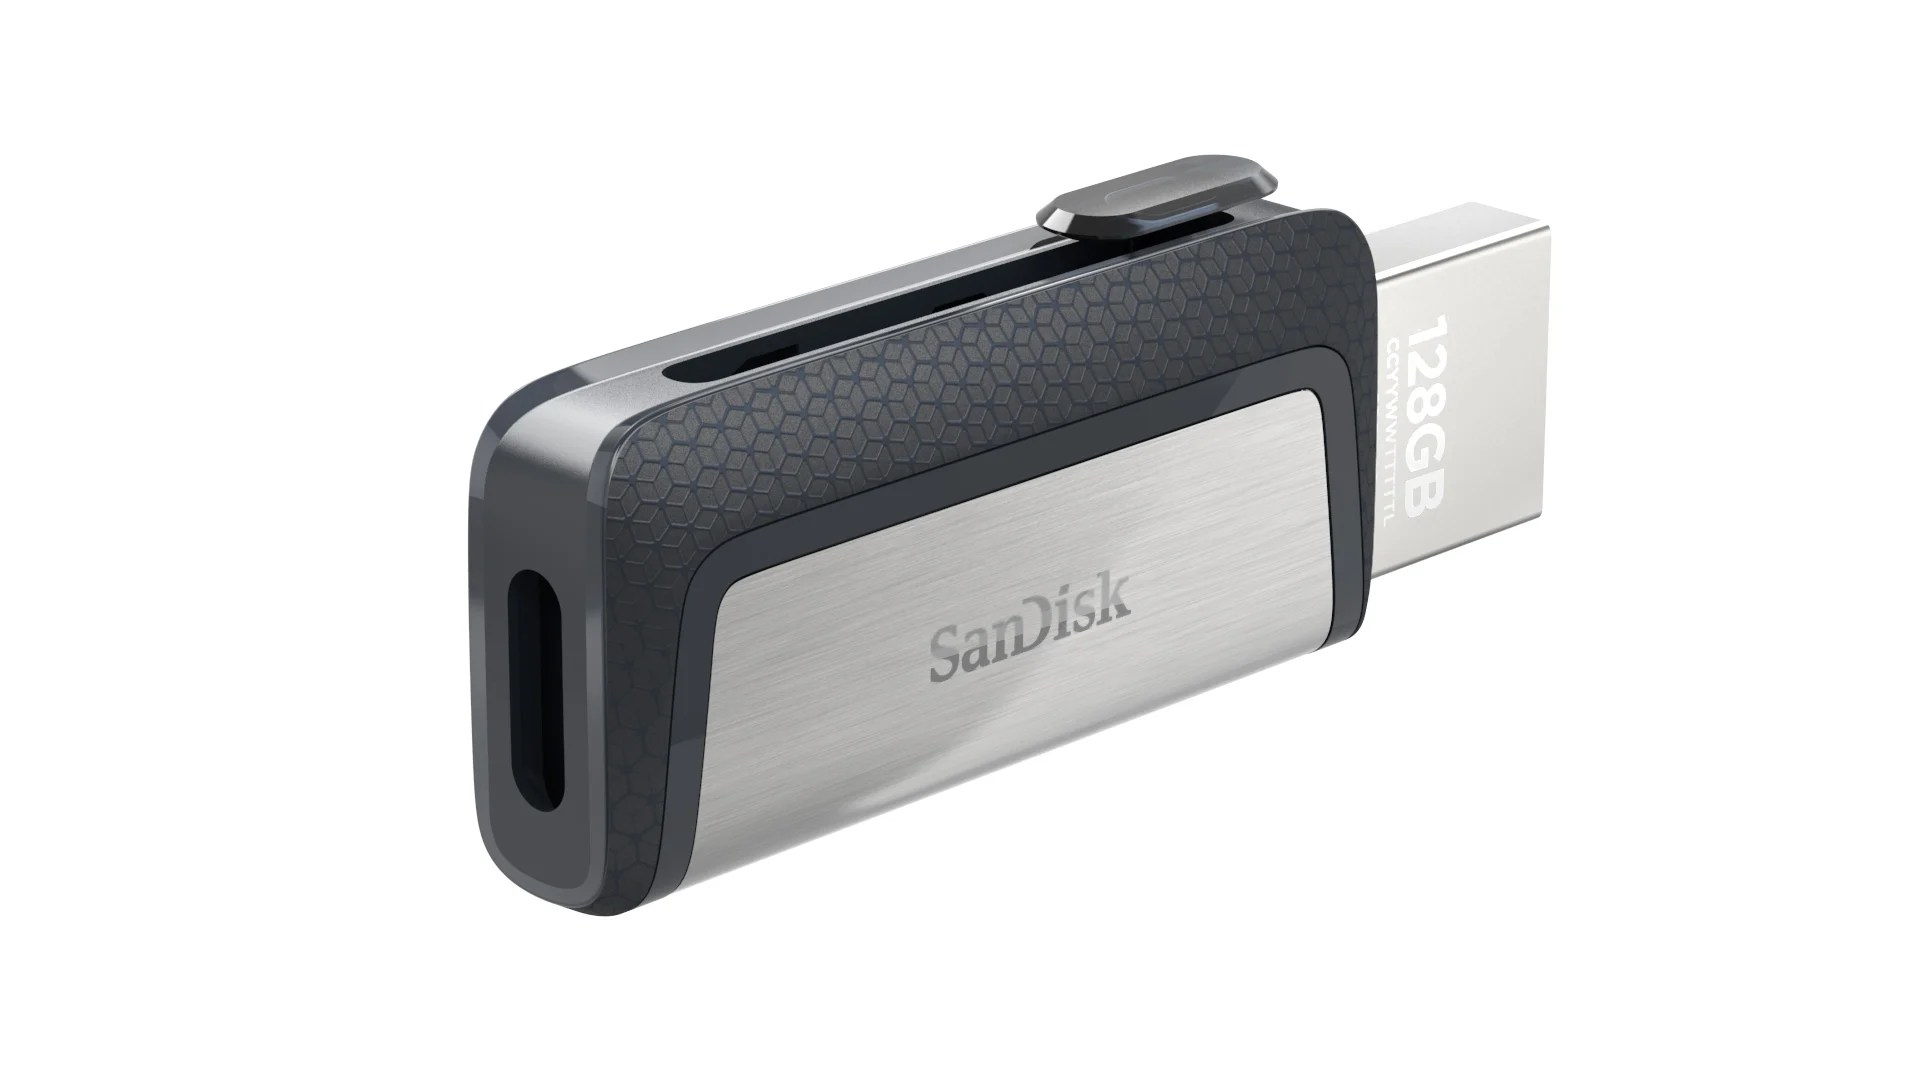 SanDisk Ultra Dual Drive : du stockage en plus pour les smartphones équipés en USB Type-C